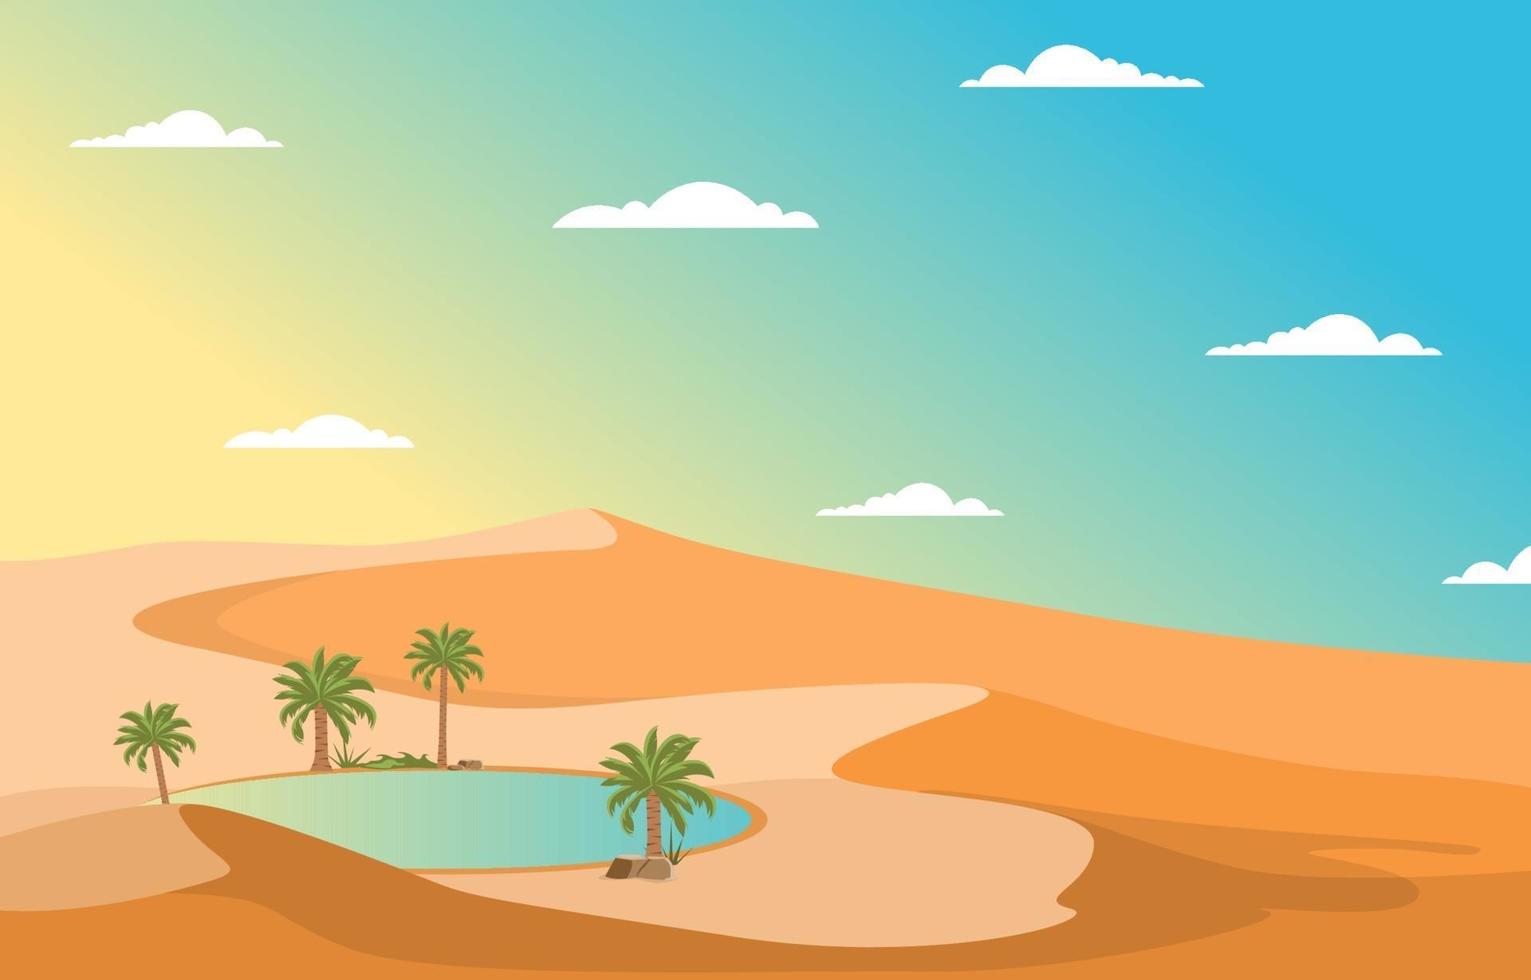 paisagem árabe com oásis e palmeiras e ilustração da colina do deserto vetor